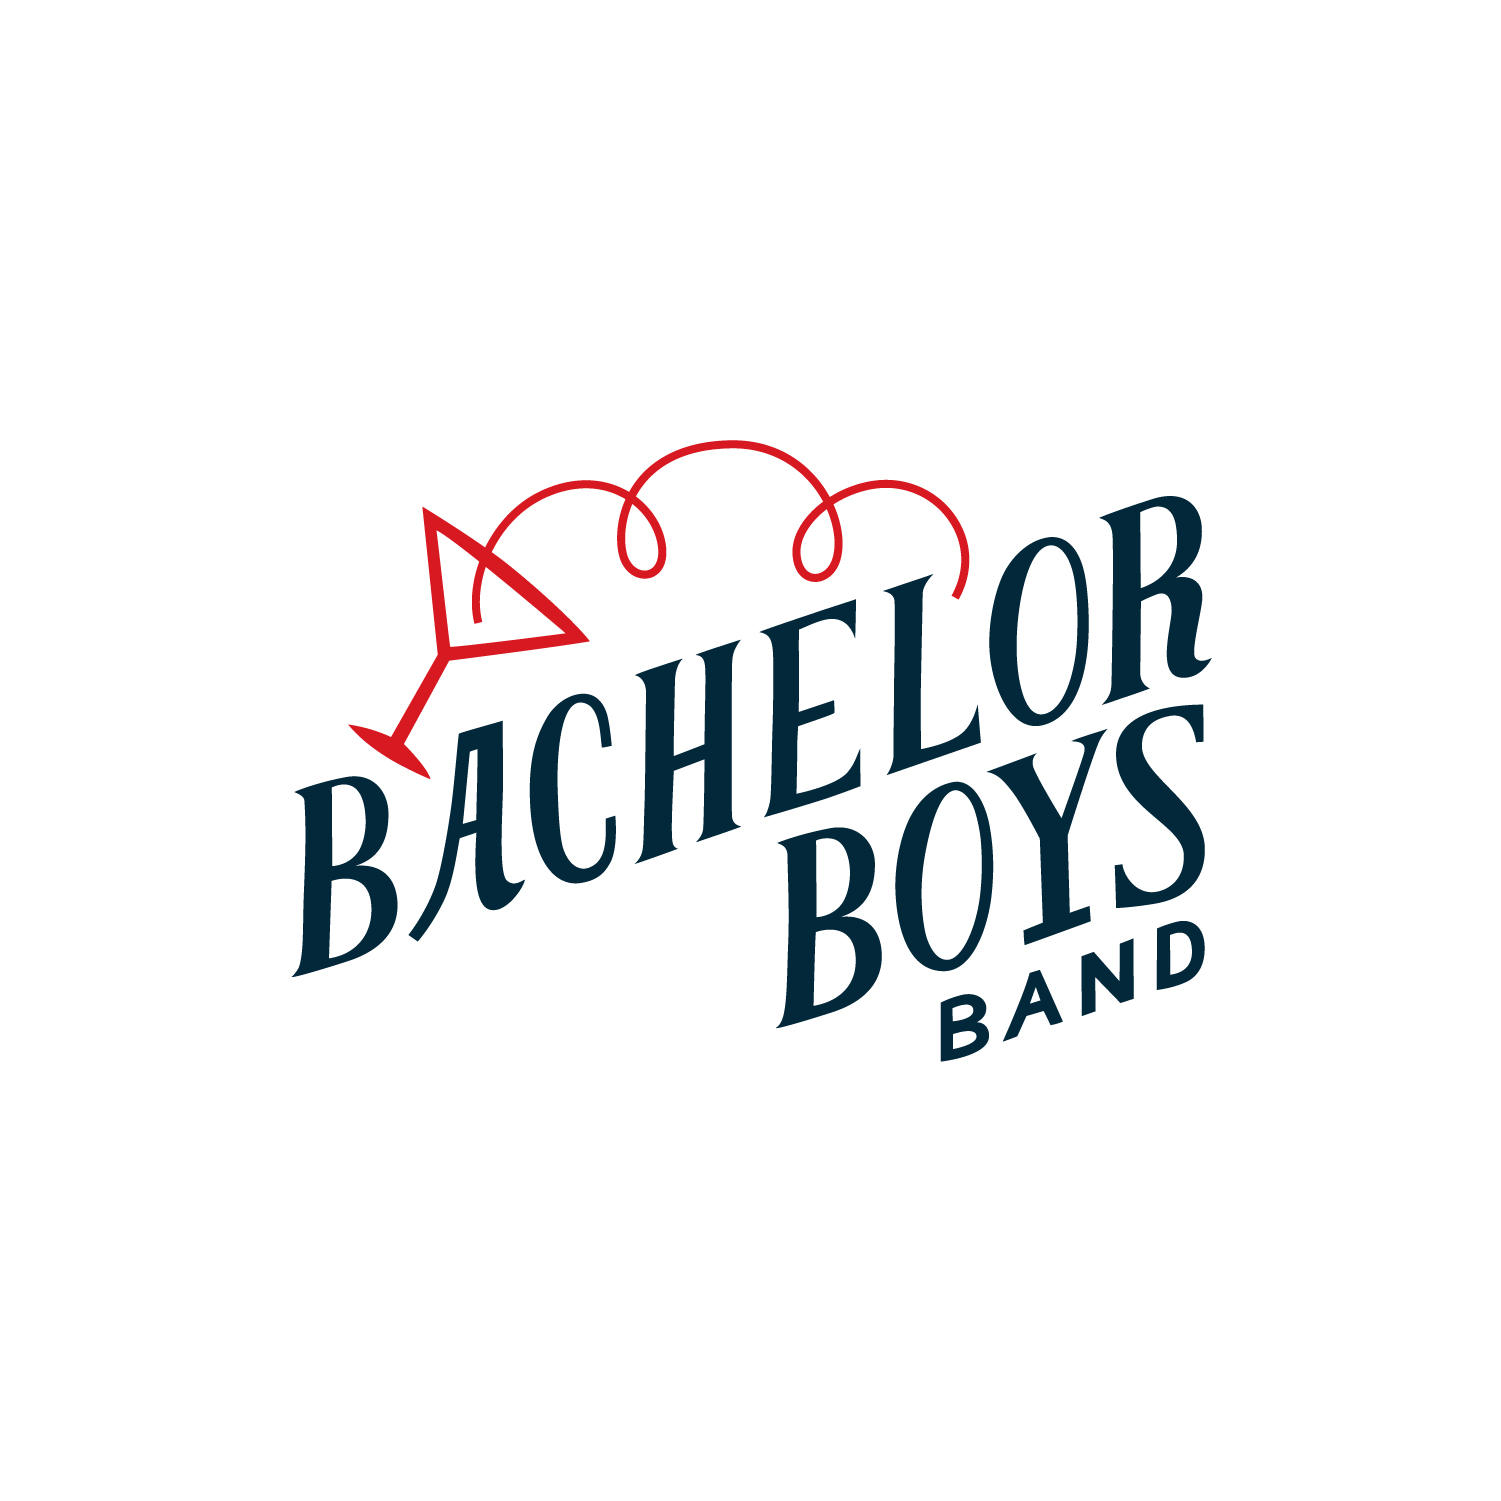 Bachelor Boys Band logo